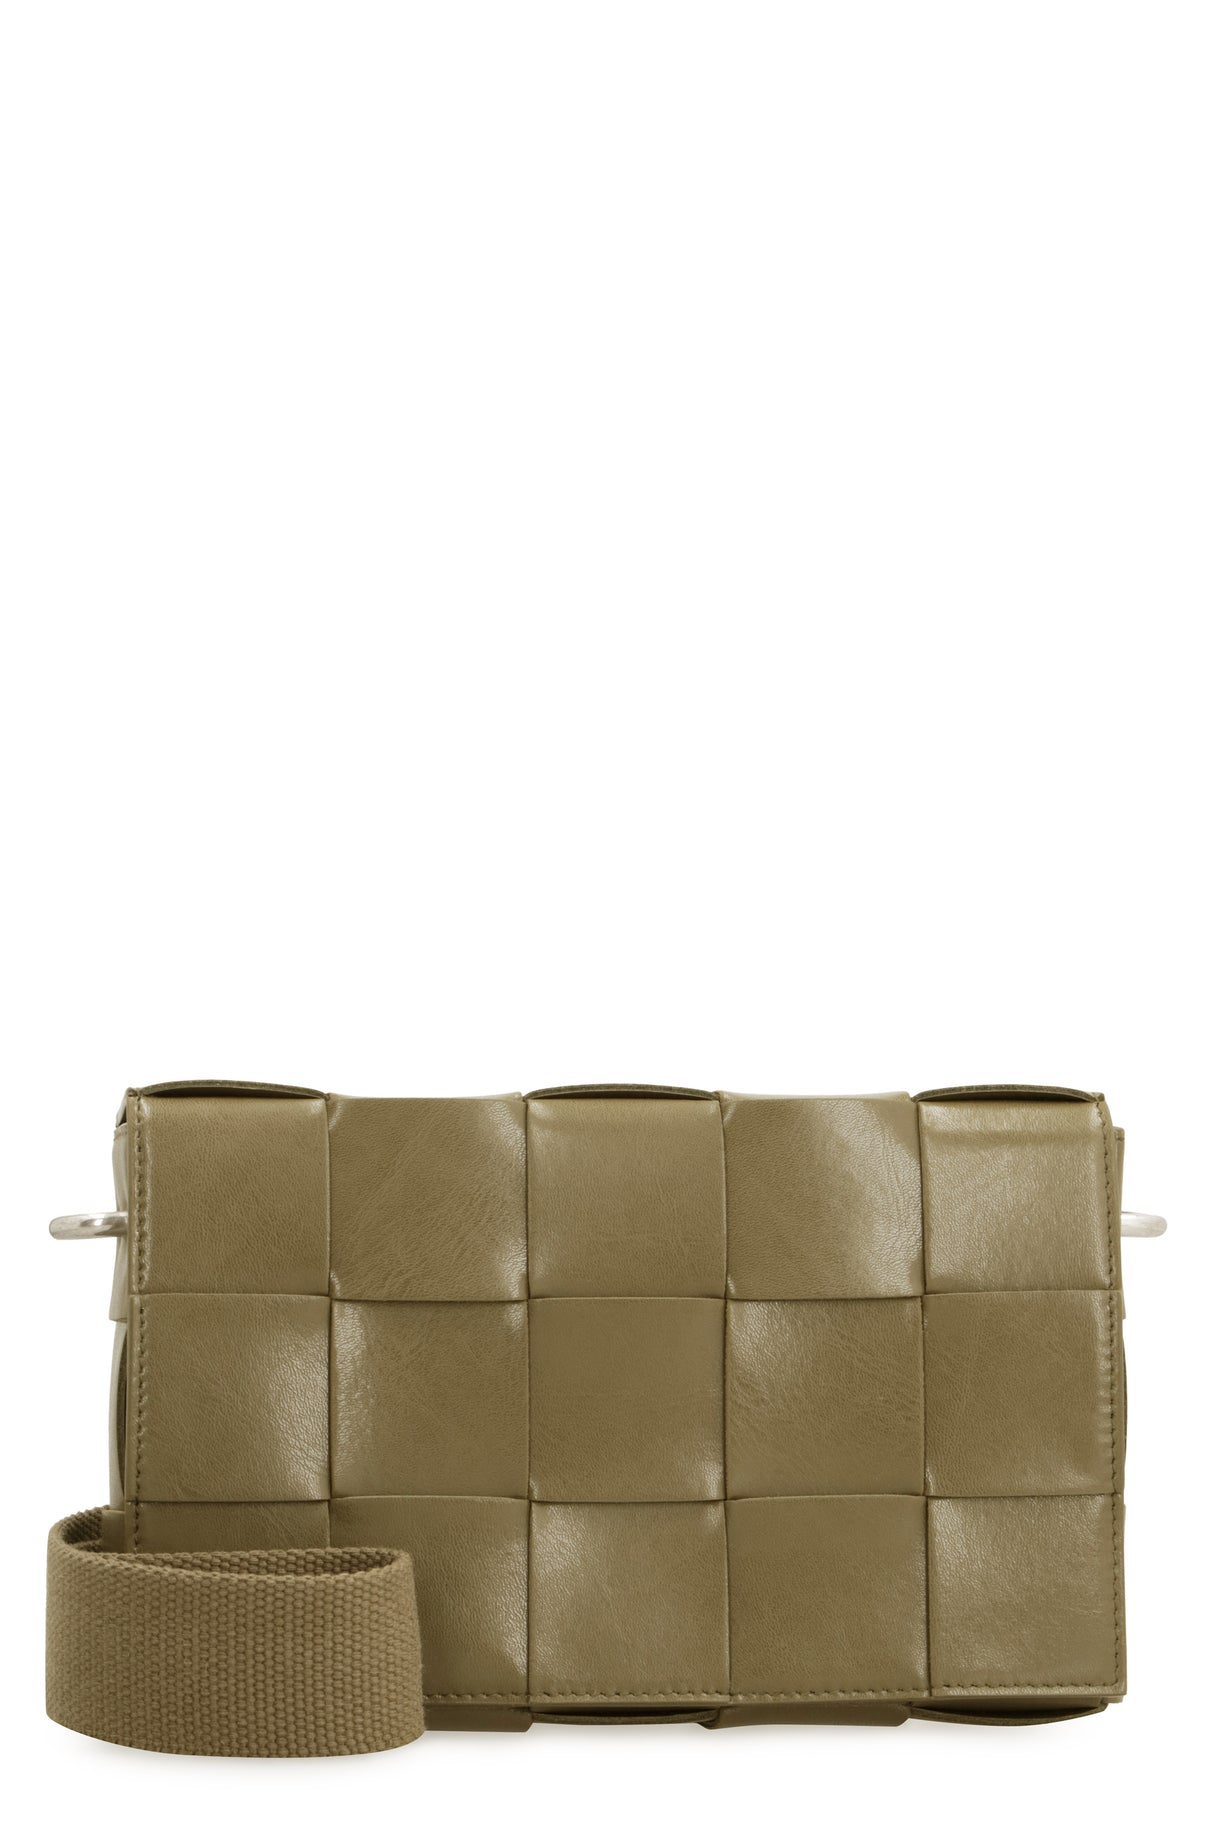 حقيبة يد تقليدية خضراء متشابكة للرجال من مجموعة FW24